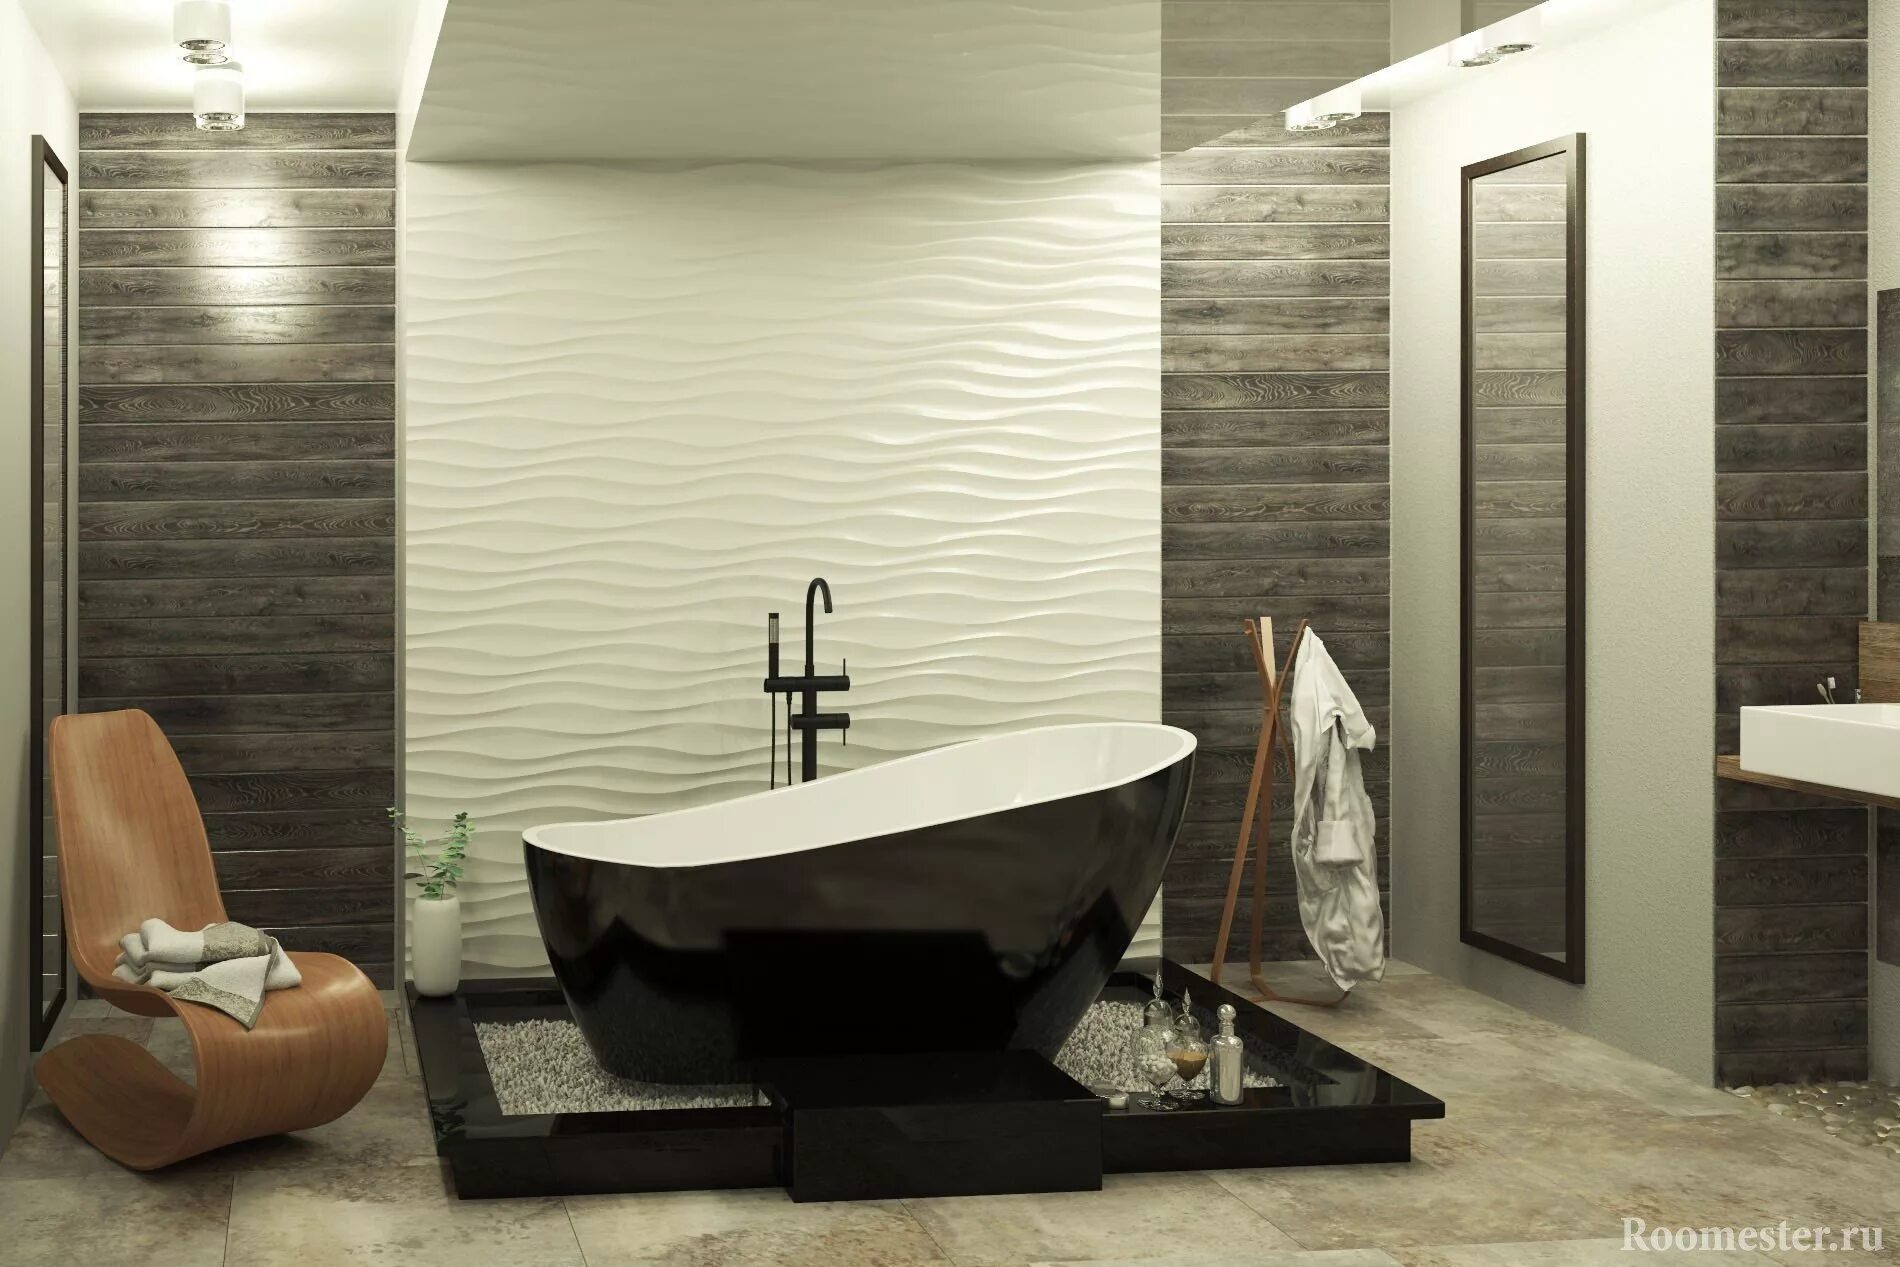 3д панели для ванной. Porcelanosa 3d плитка. Отделочные панели для ванной комнаты. Отделка стен в ванной комнате. Декоративные панели в ванную комнату.